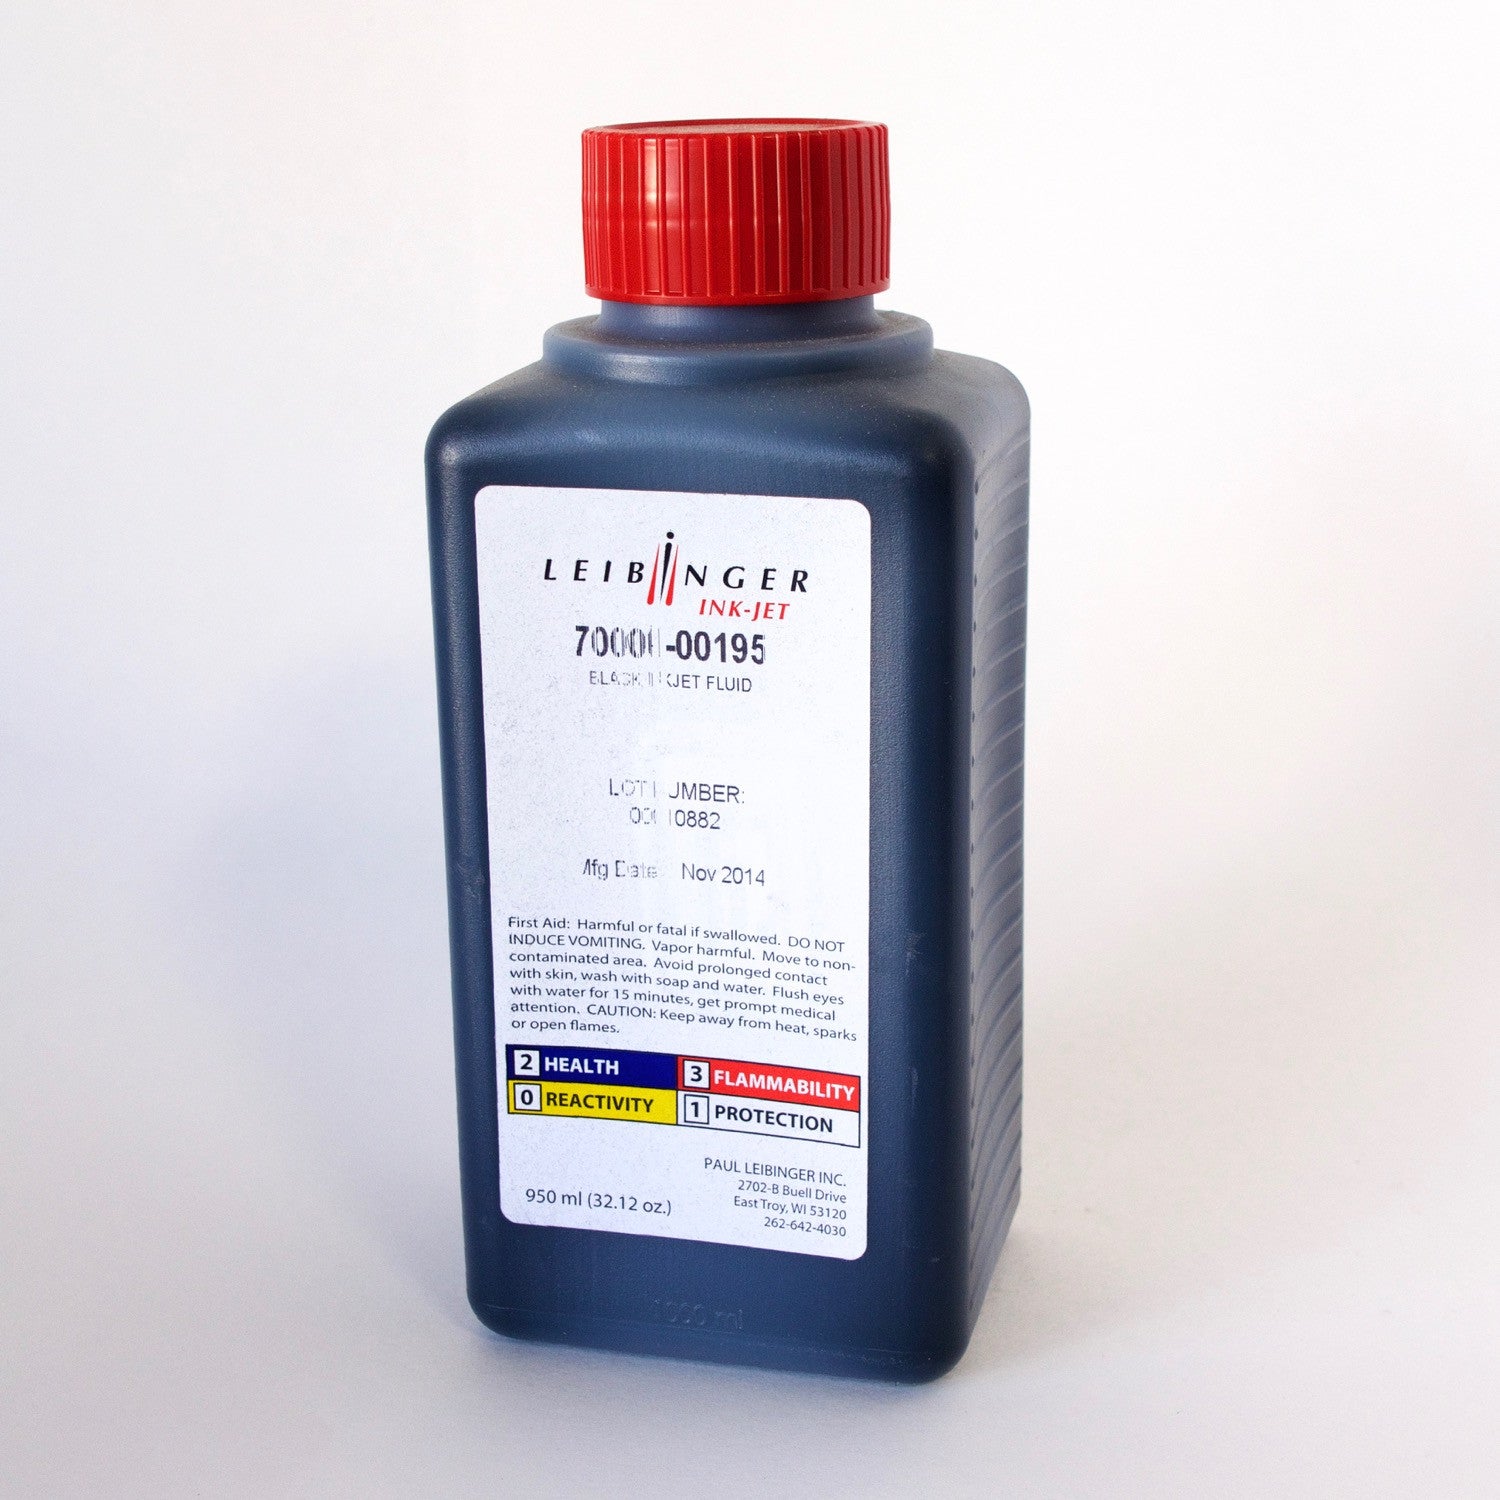 Leibinger Black Inkjet Fluid Ink (950 ml) 70000-00195